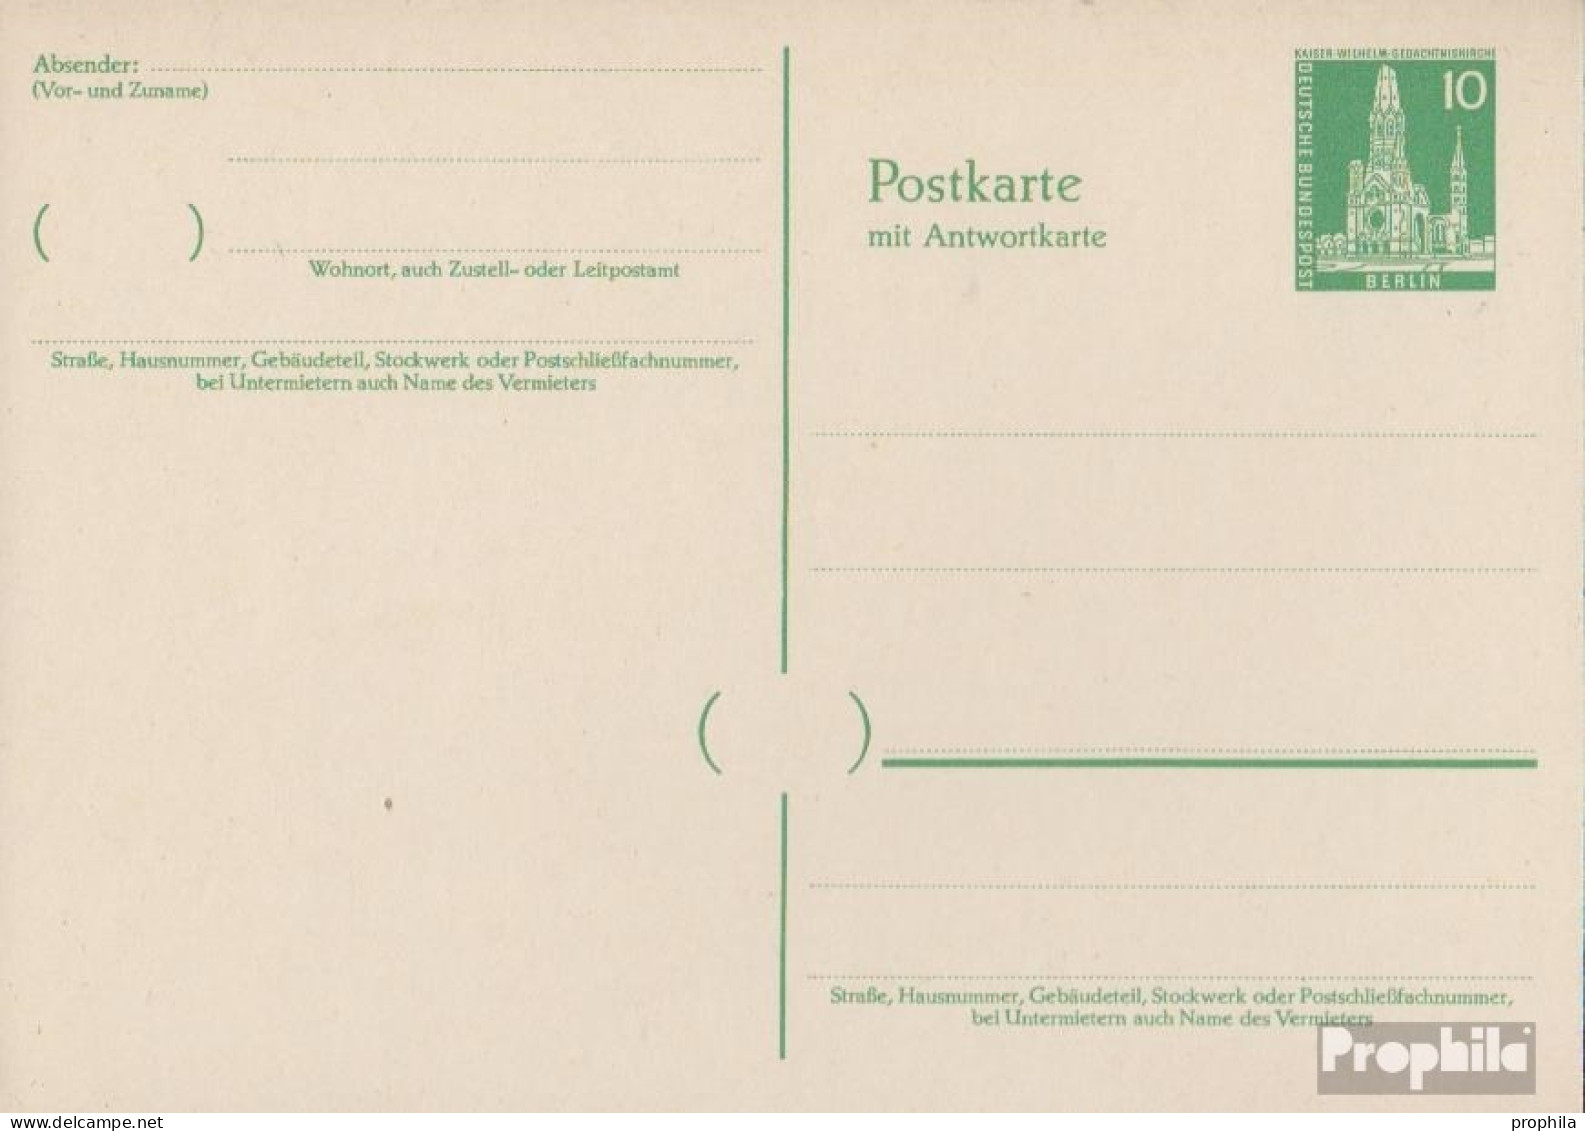 Berlin (West) P39 Amtliche Postkarte Ungebraucht 1957 Berliner Bauten II - Postkarten - Ungebraucht